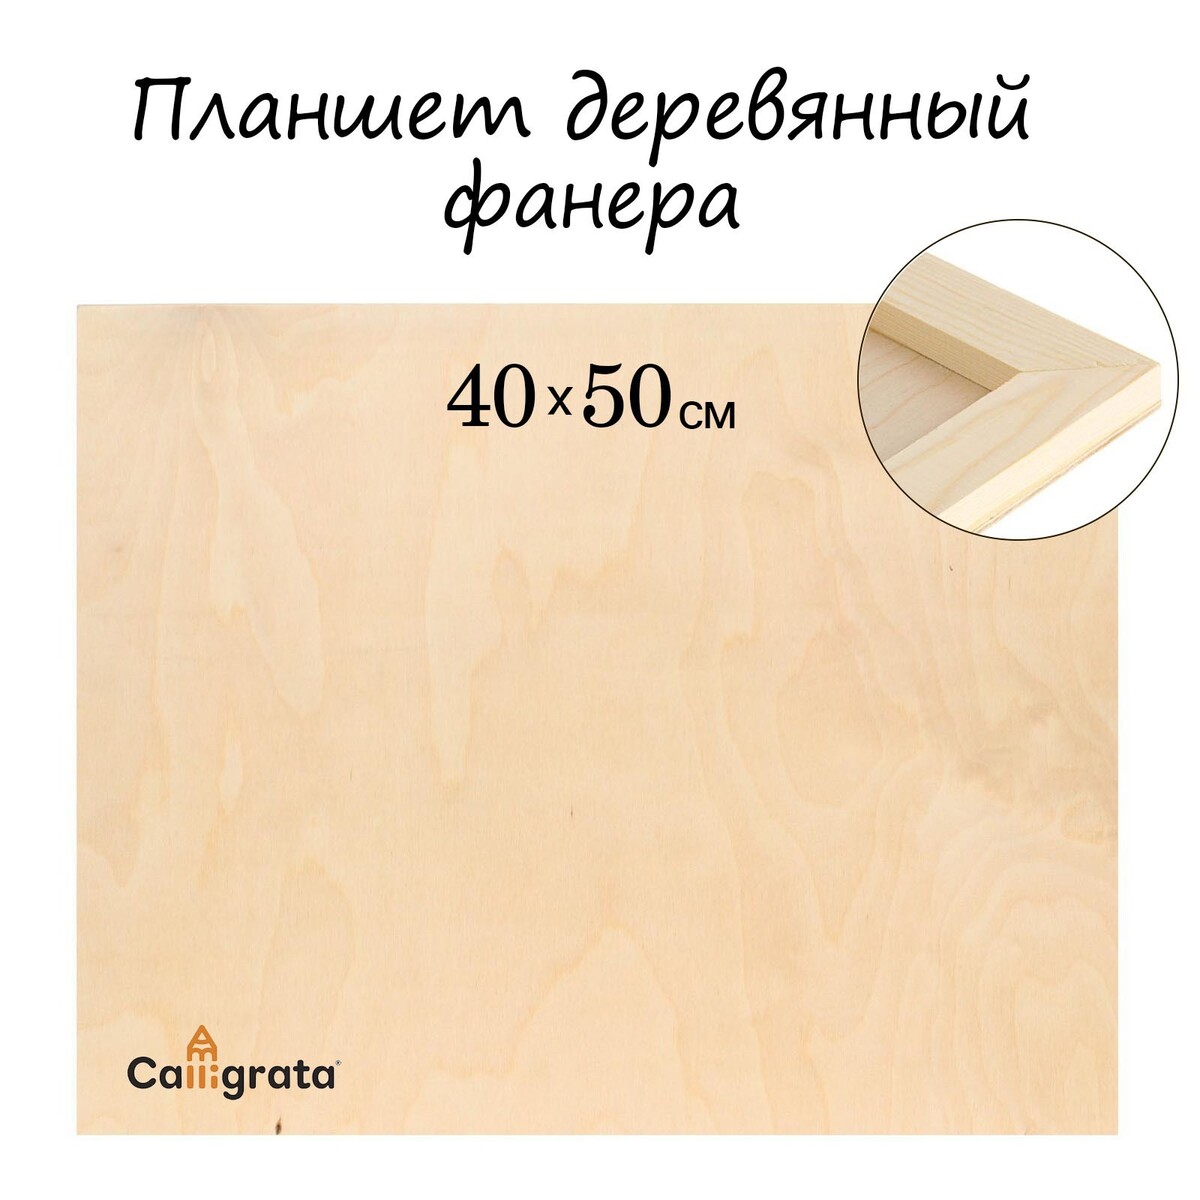 Планшет деревянный 40 х 50 х 2 см, фанера (для рисования эпоксидной смолой) планшет деревянный 30 х 40 х 2 см фанера